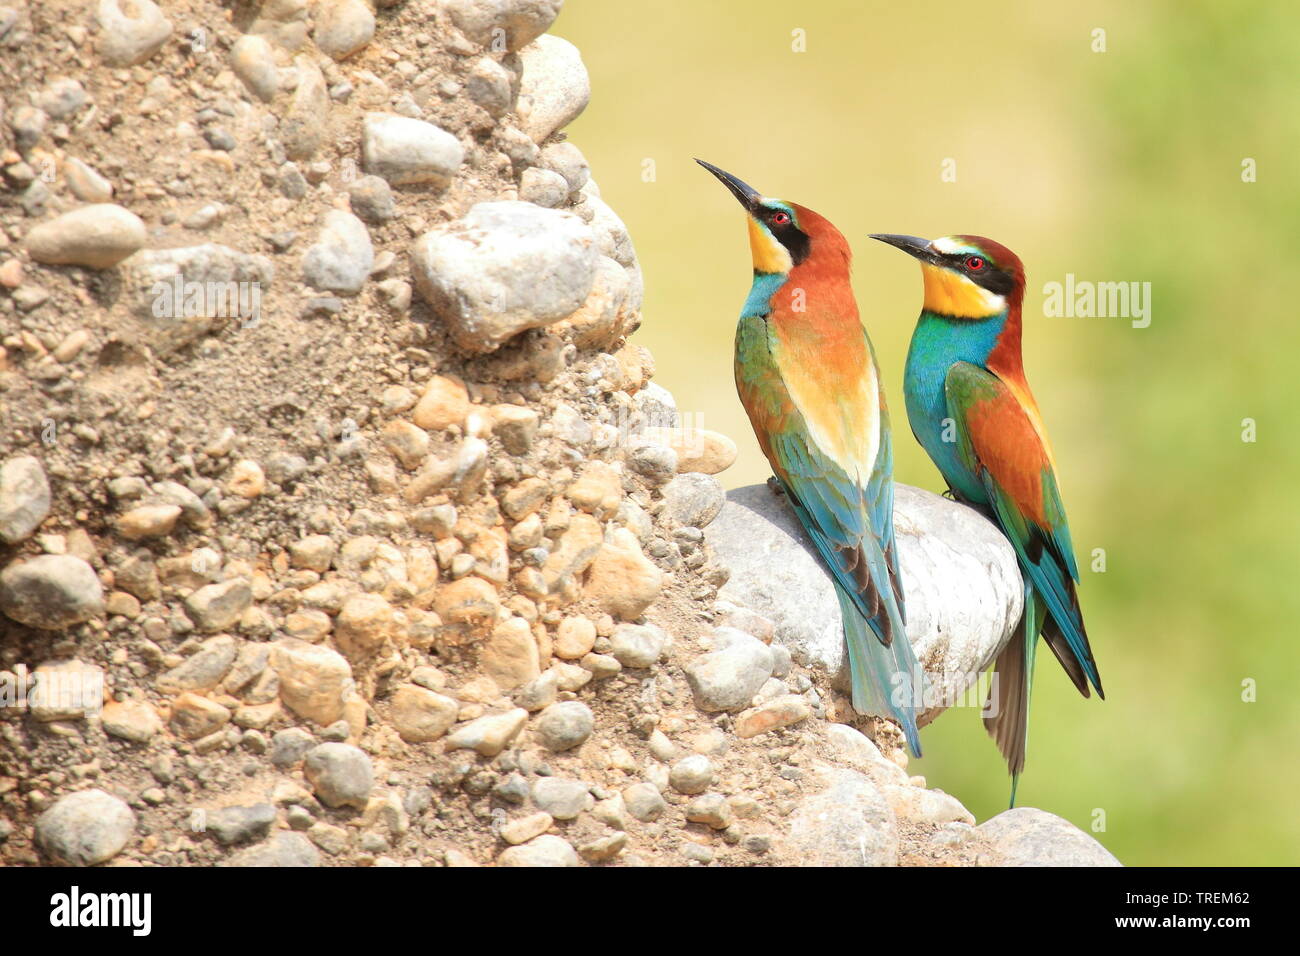 Guêpier d'Europe (Merops apiaster), de beaux oiseaux colorés, colonie sur pente rocheuse Banque D'Images